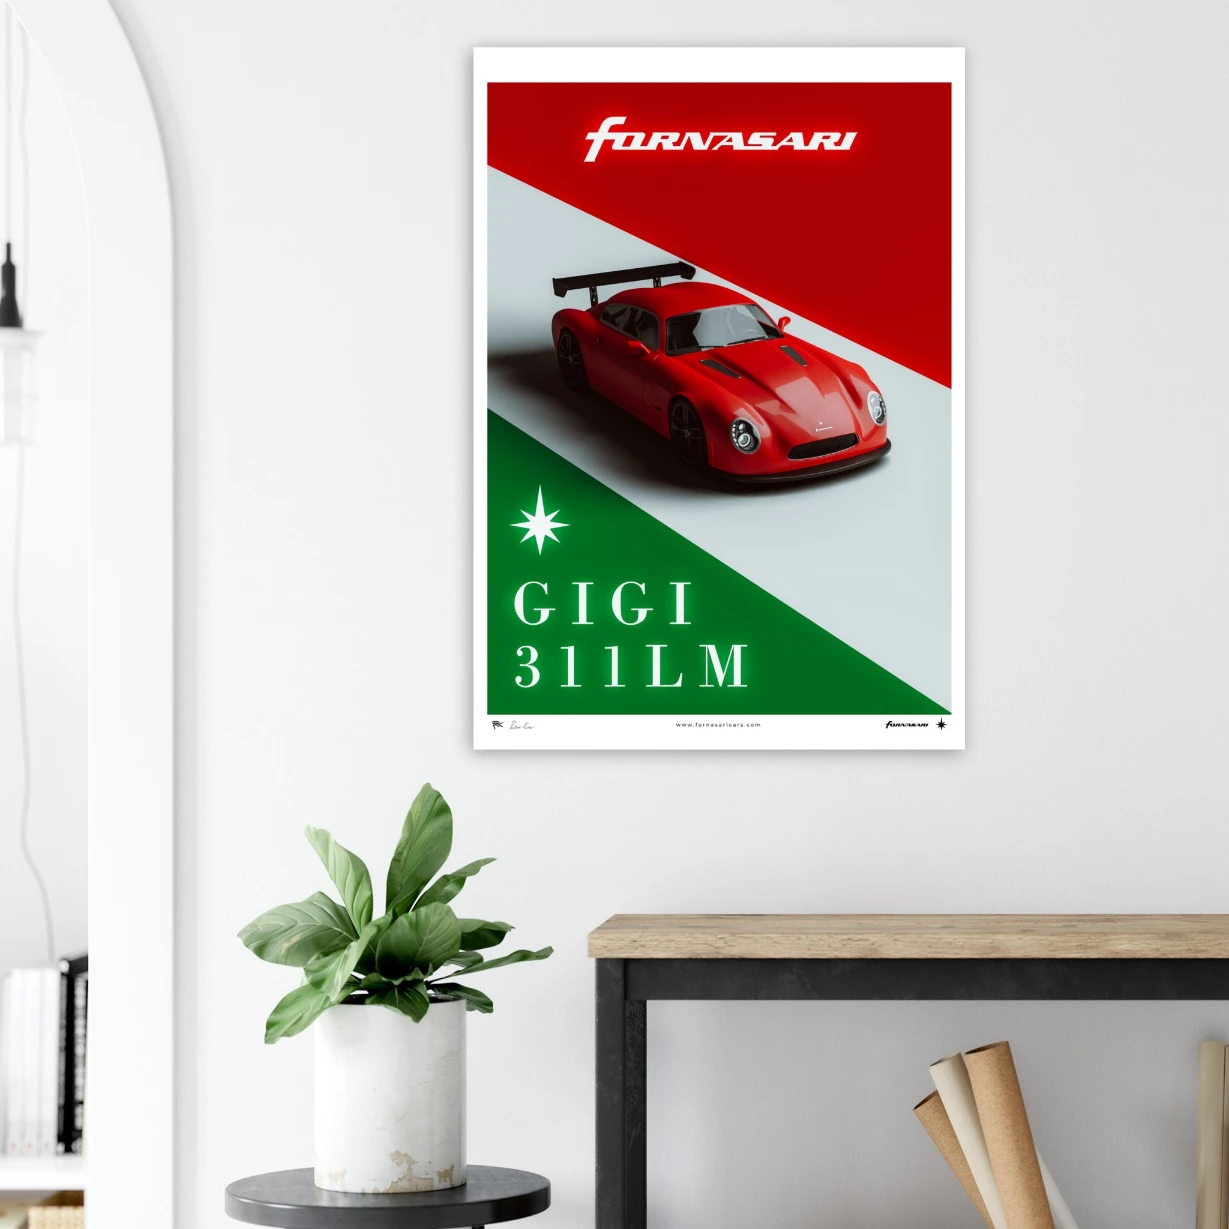 Fornasari Gigi 311 LM Car Poster